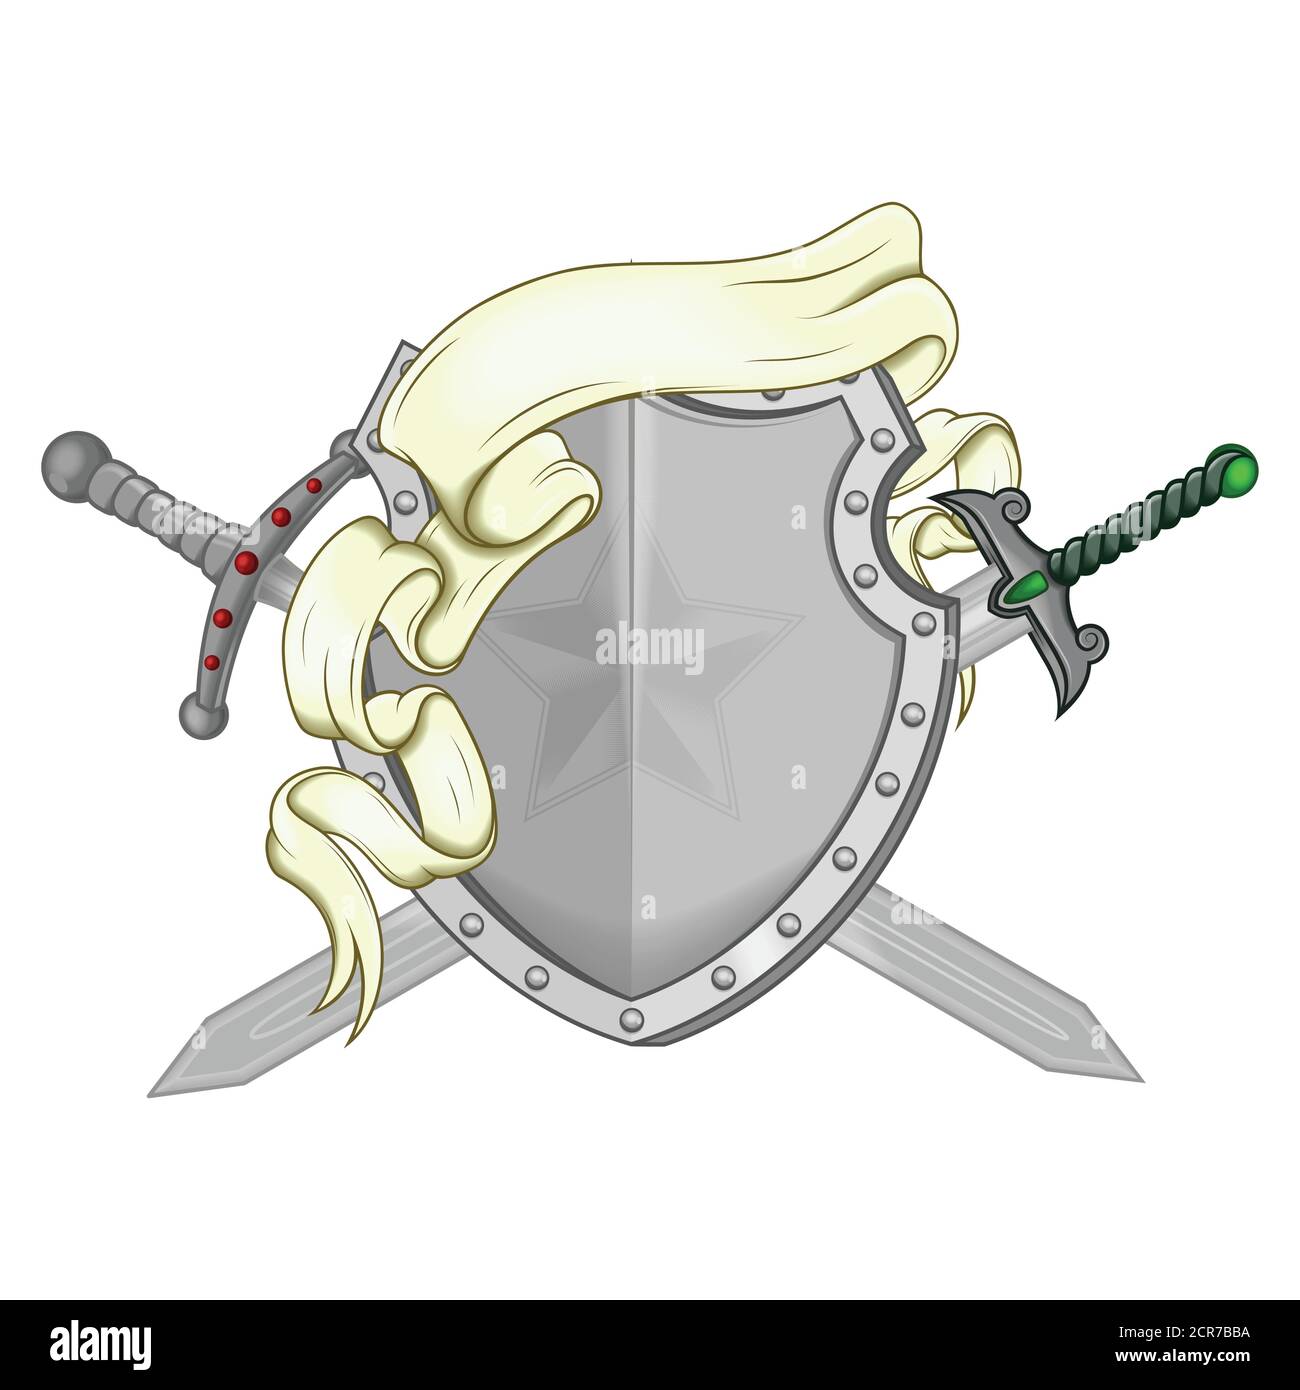 Abbildung des Wappens mit Bändern und zwei Schwertern, alle auf weißem Hintergrund. Stock Vektor